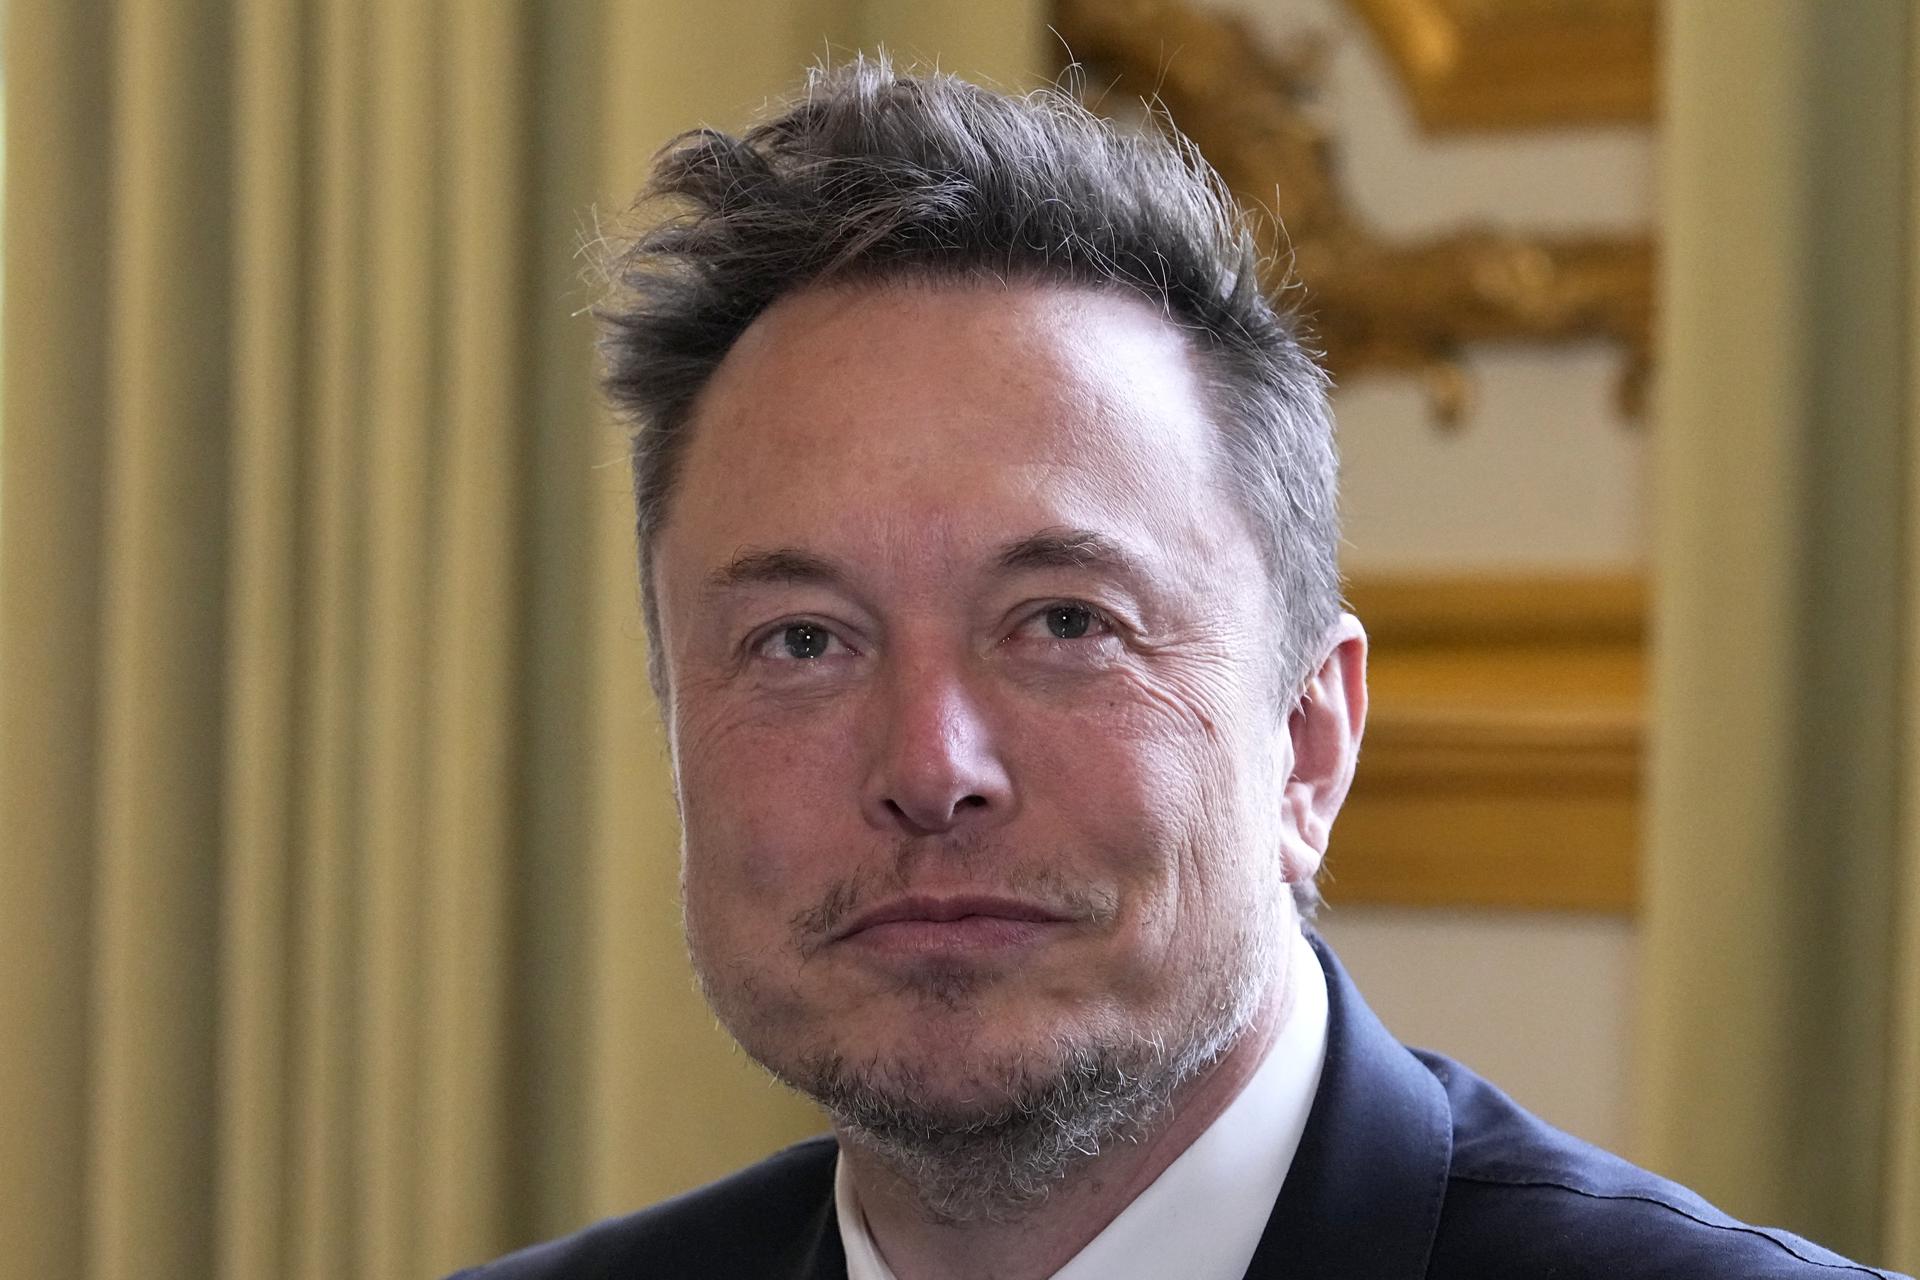 El director ejecutivo de X. Corp, Elon Musk, en una fotografía de archivo. EFE/Mchel Euler/Pool